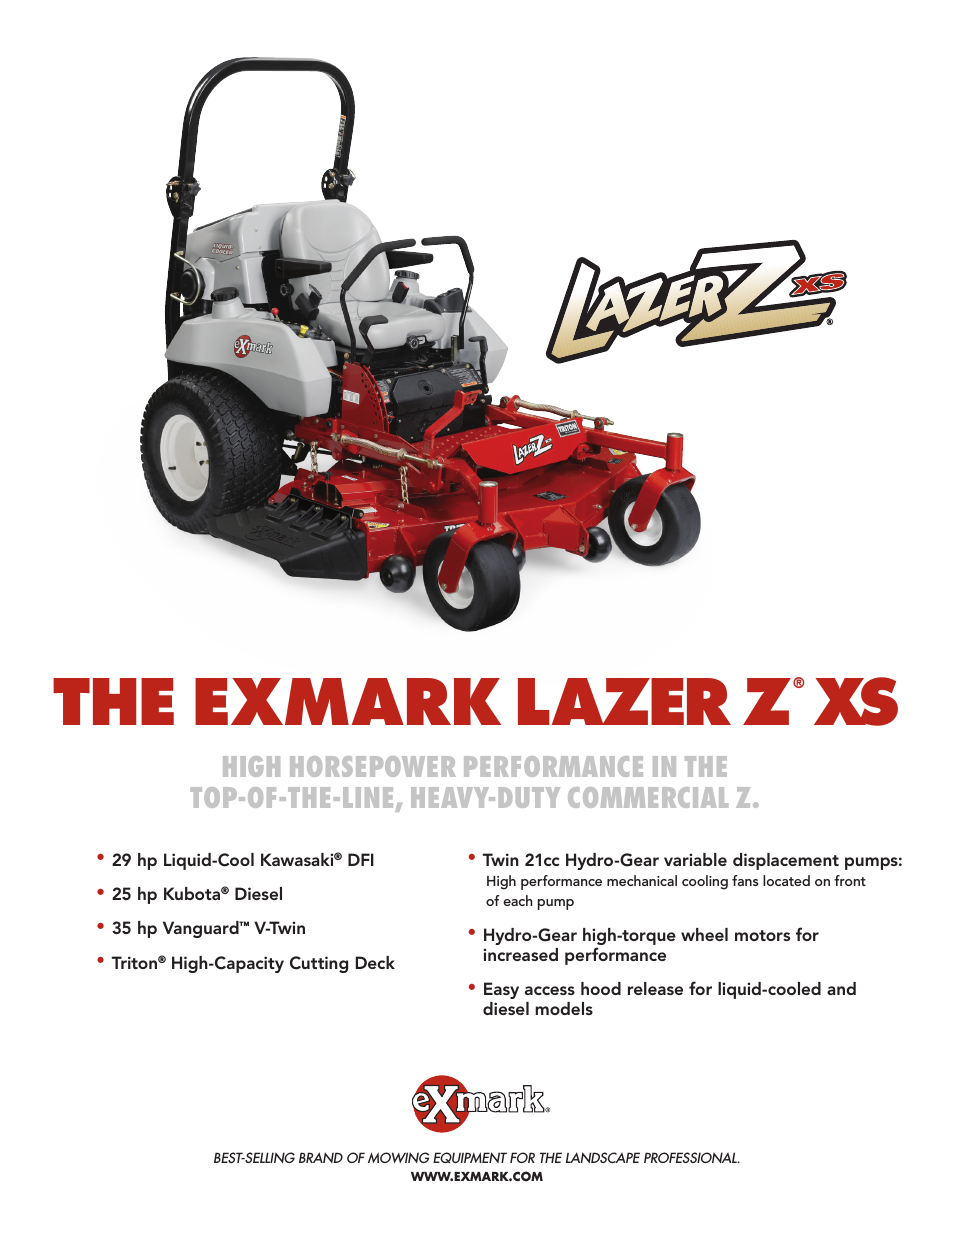 Lazer Z XS lXs25Kd665